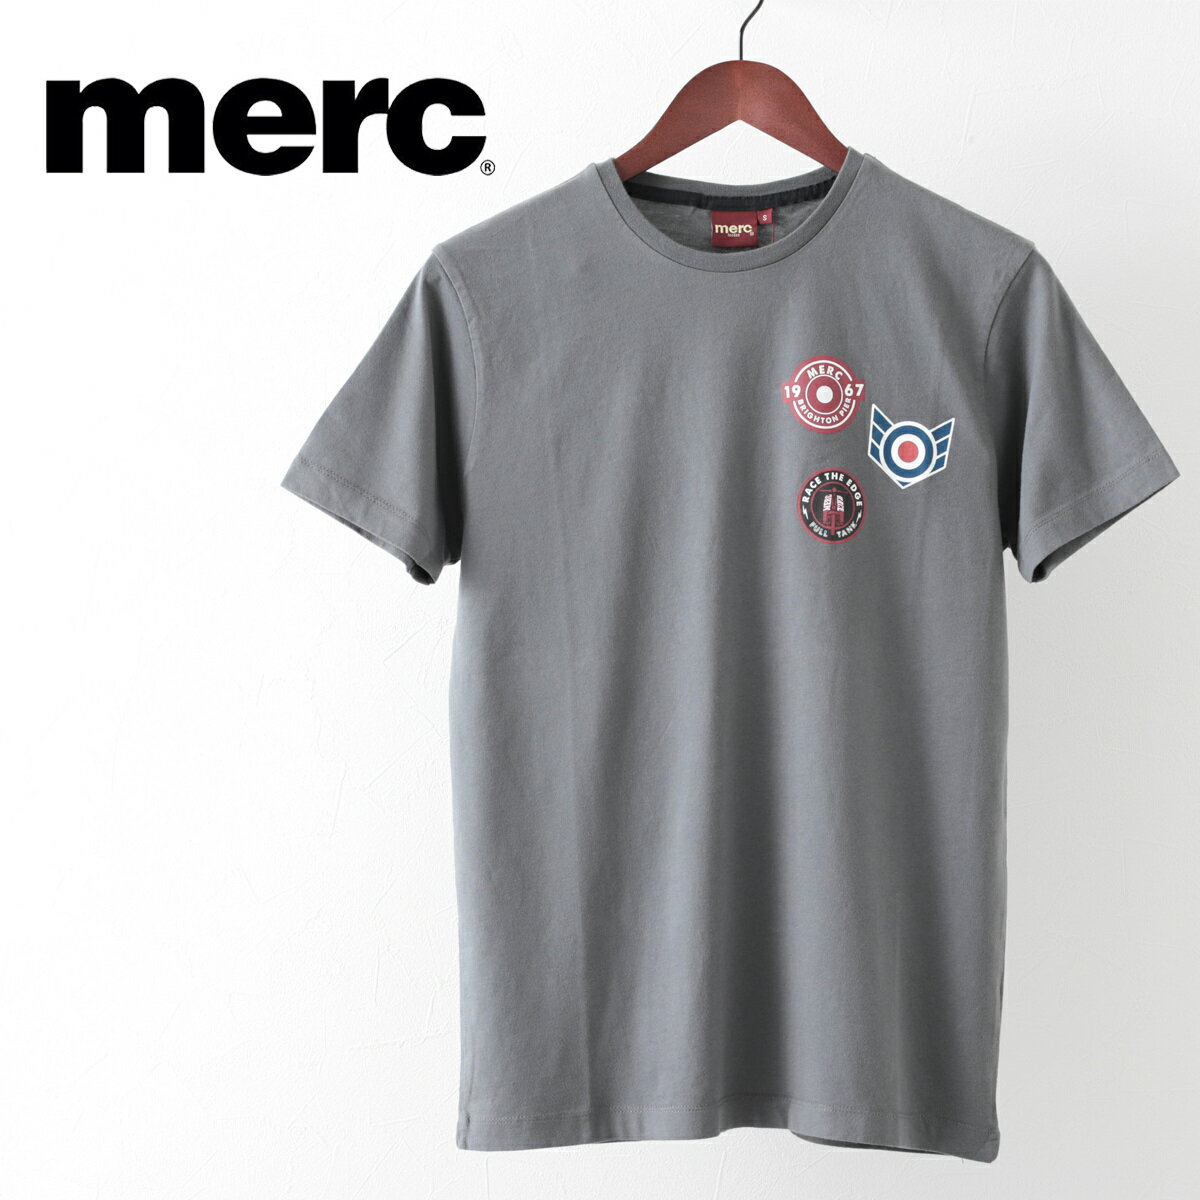 メルクロンドン メンズ Tシャツ Merc London バッジ グラフィック チャコール モッズファッション ギフト トラッド